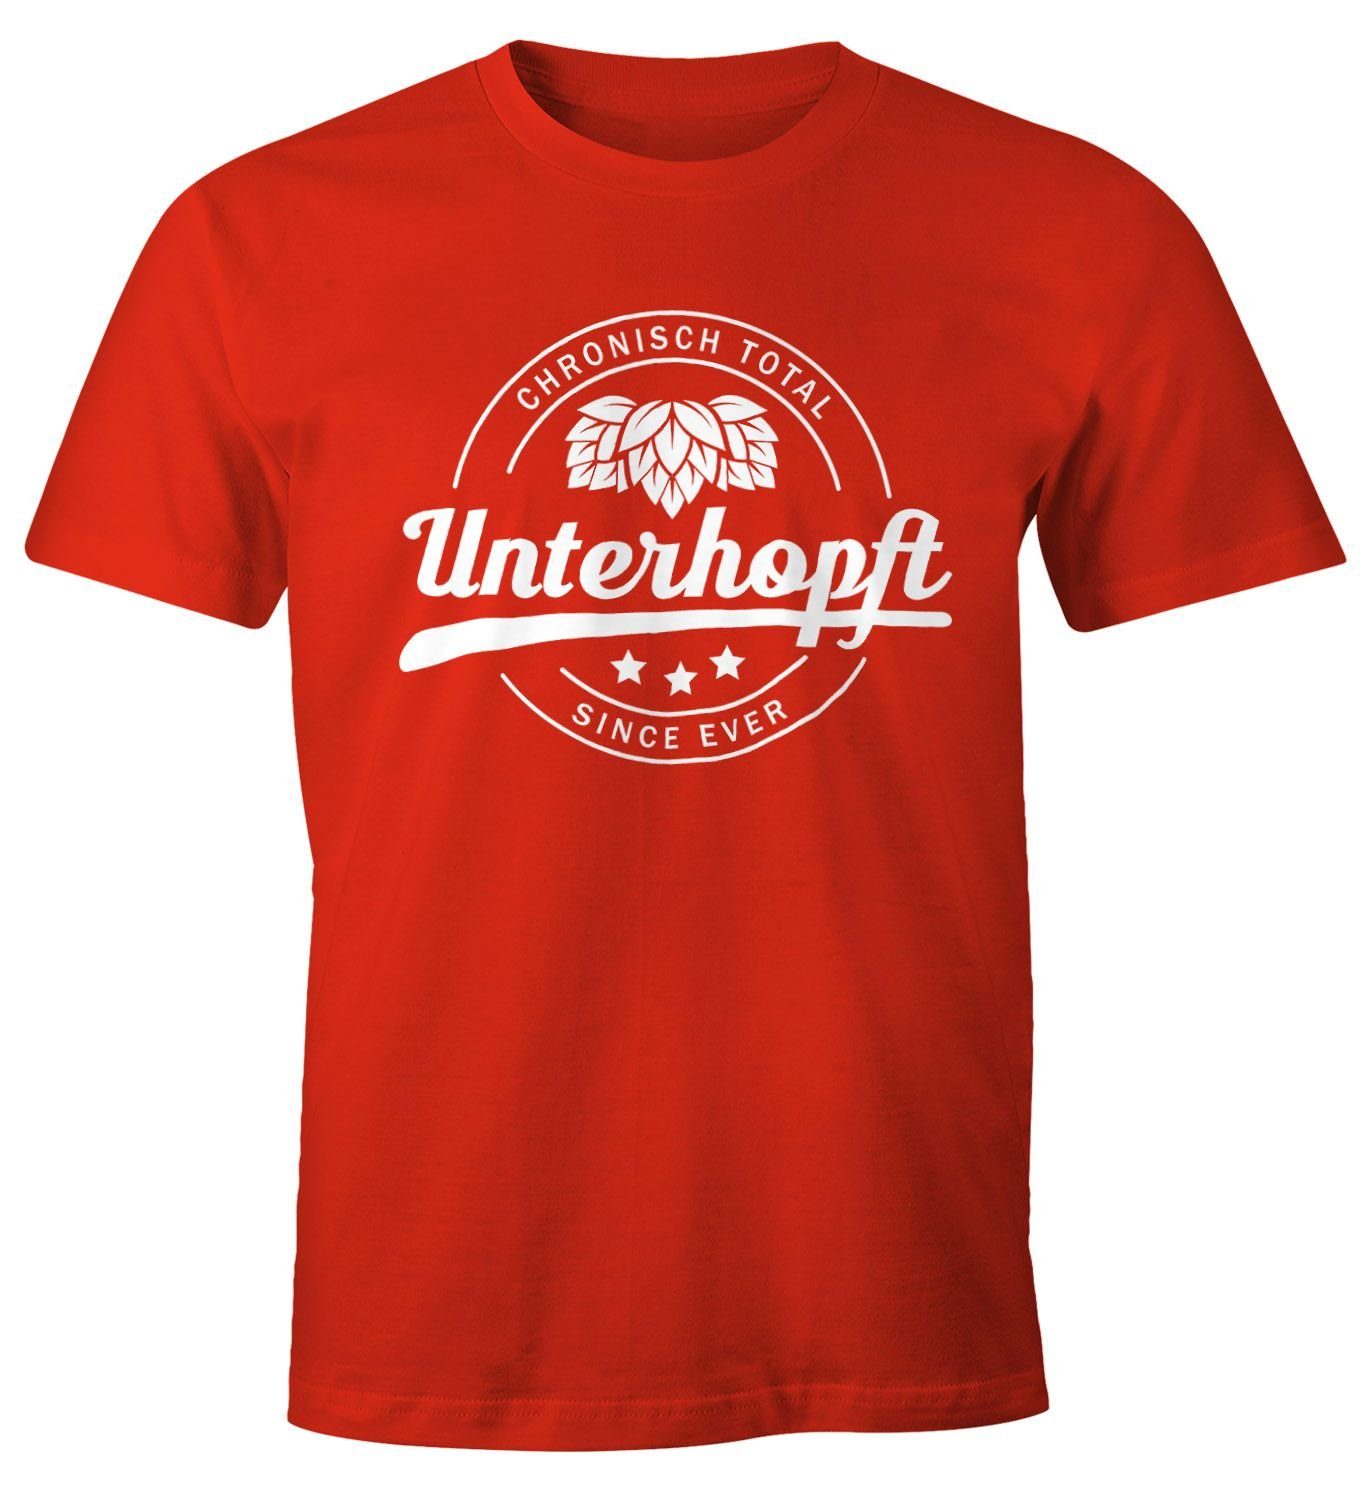 MoonWorks Print-Shirt Chronisch Unterhopft Total Herren T-Shirt Since Ever Fun-Shirt Moonworks® mit Print rot